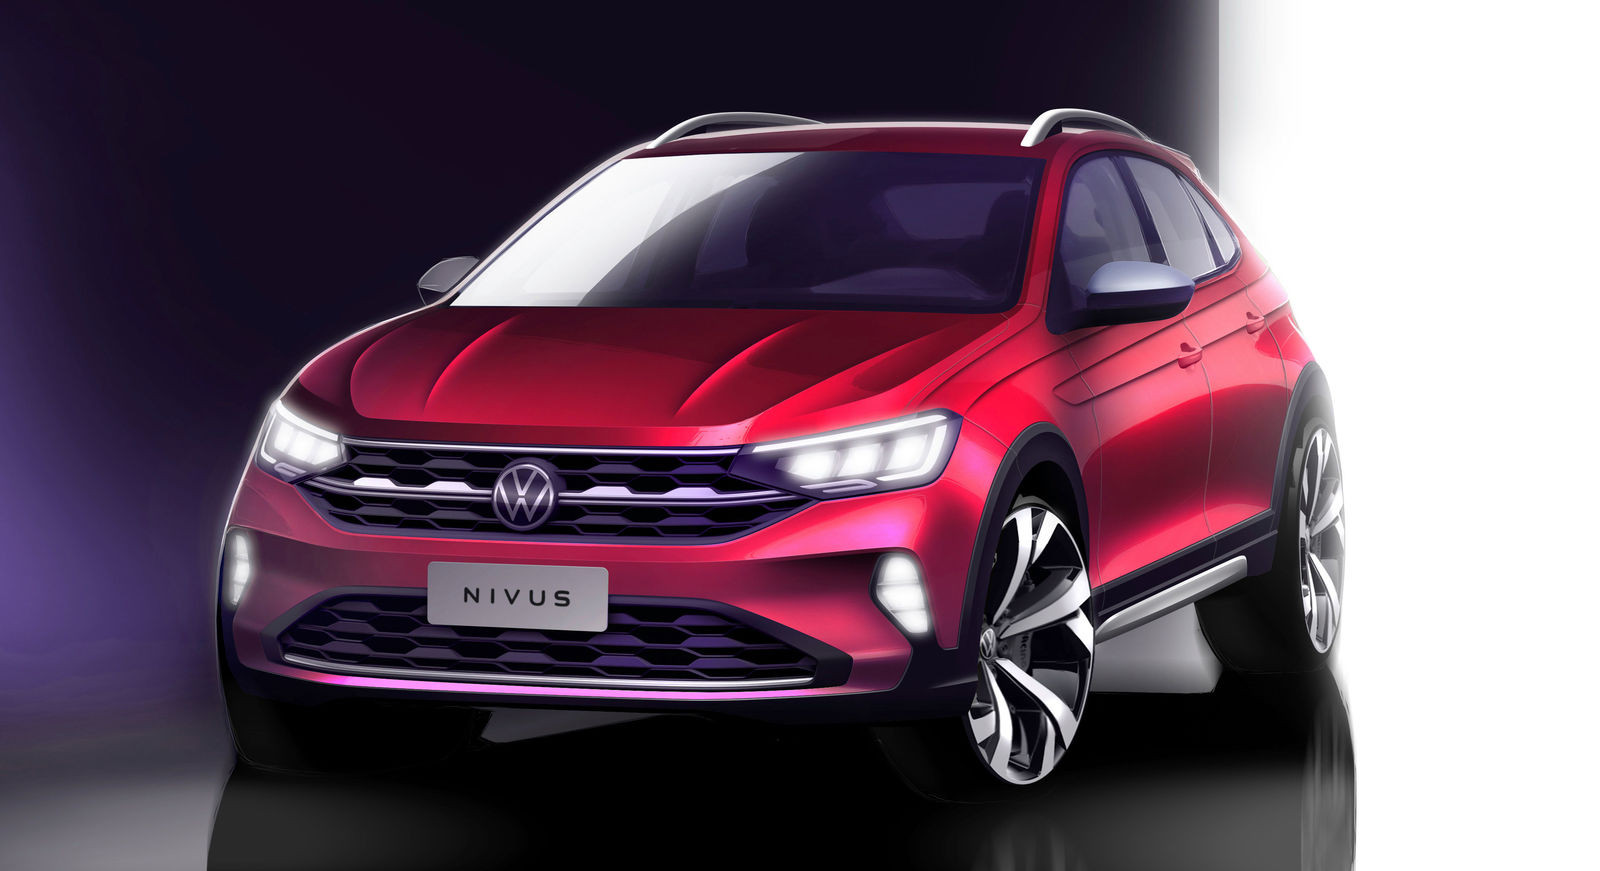 Weltpremiere des neuen Volkswagen Nivus